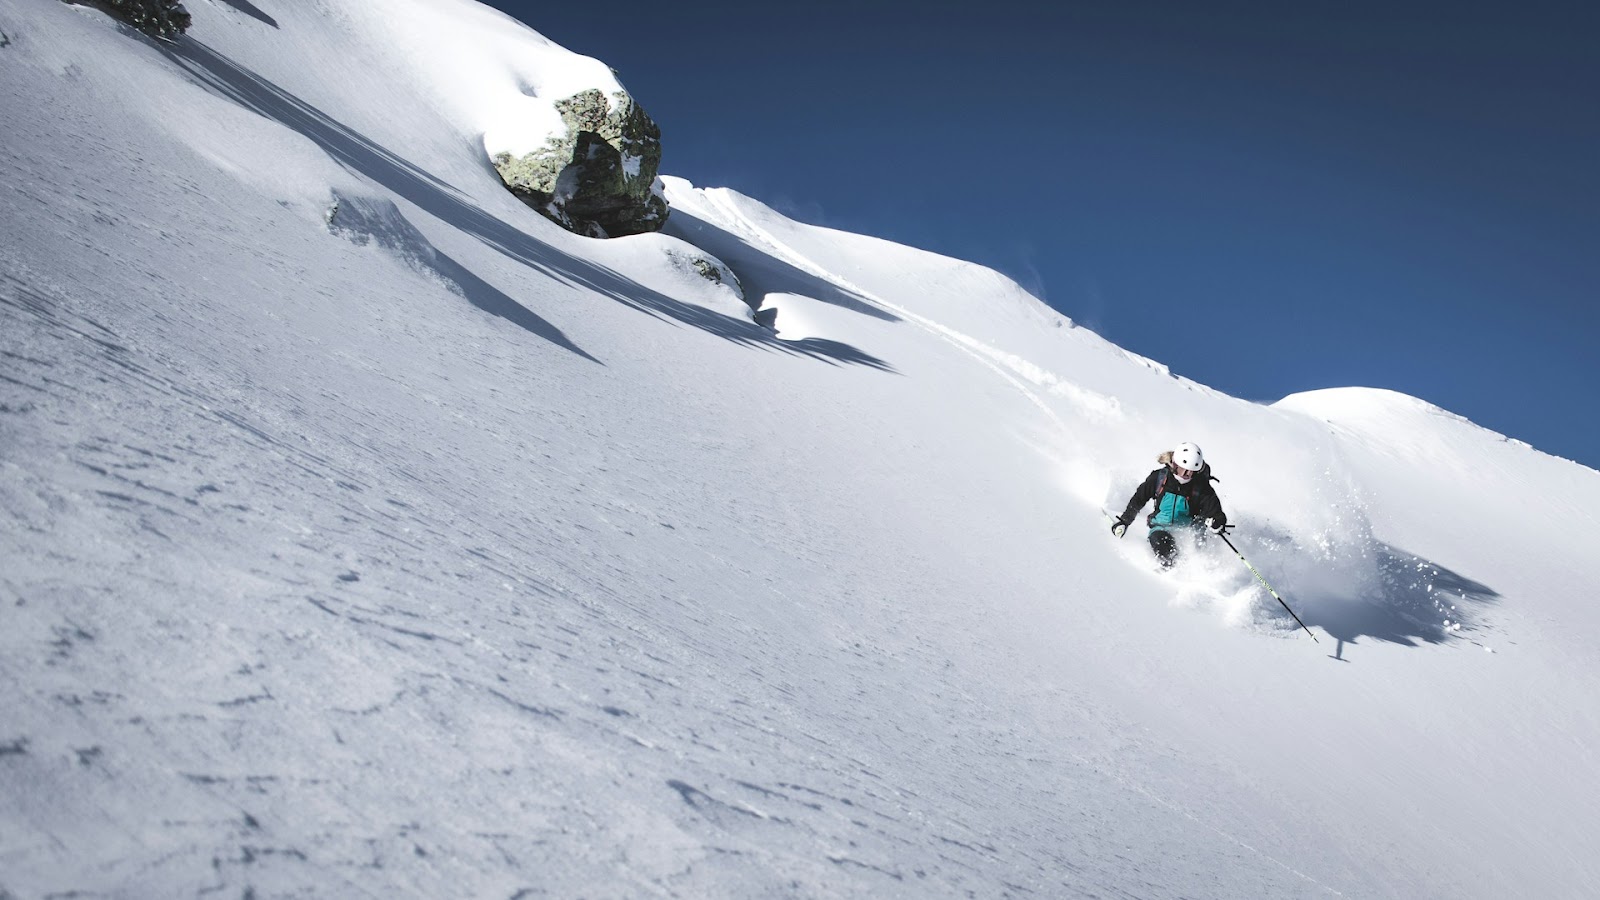 a skier descending down a slope